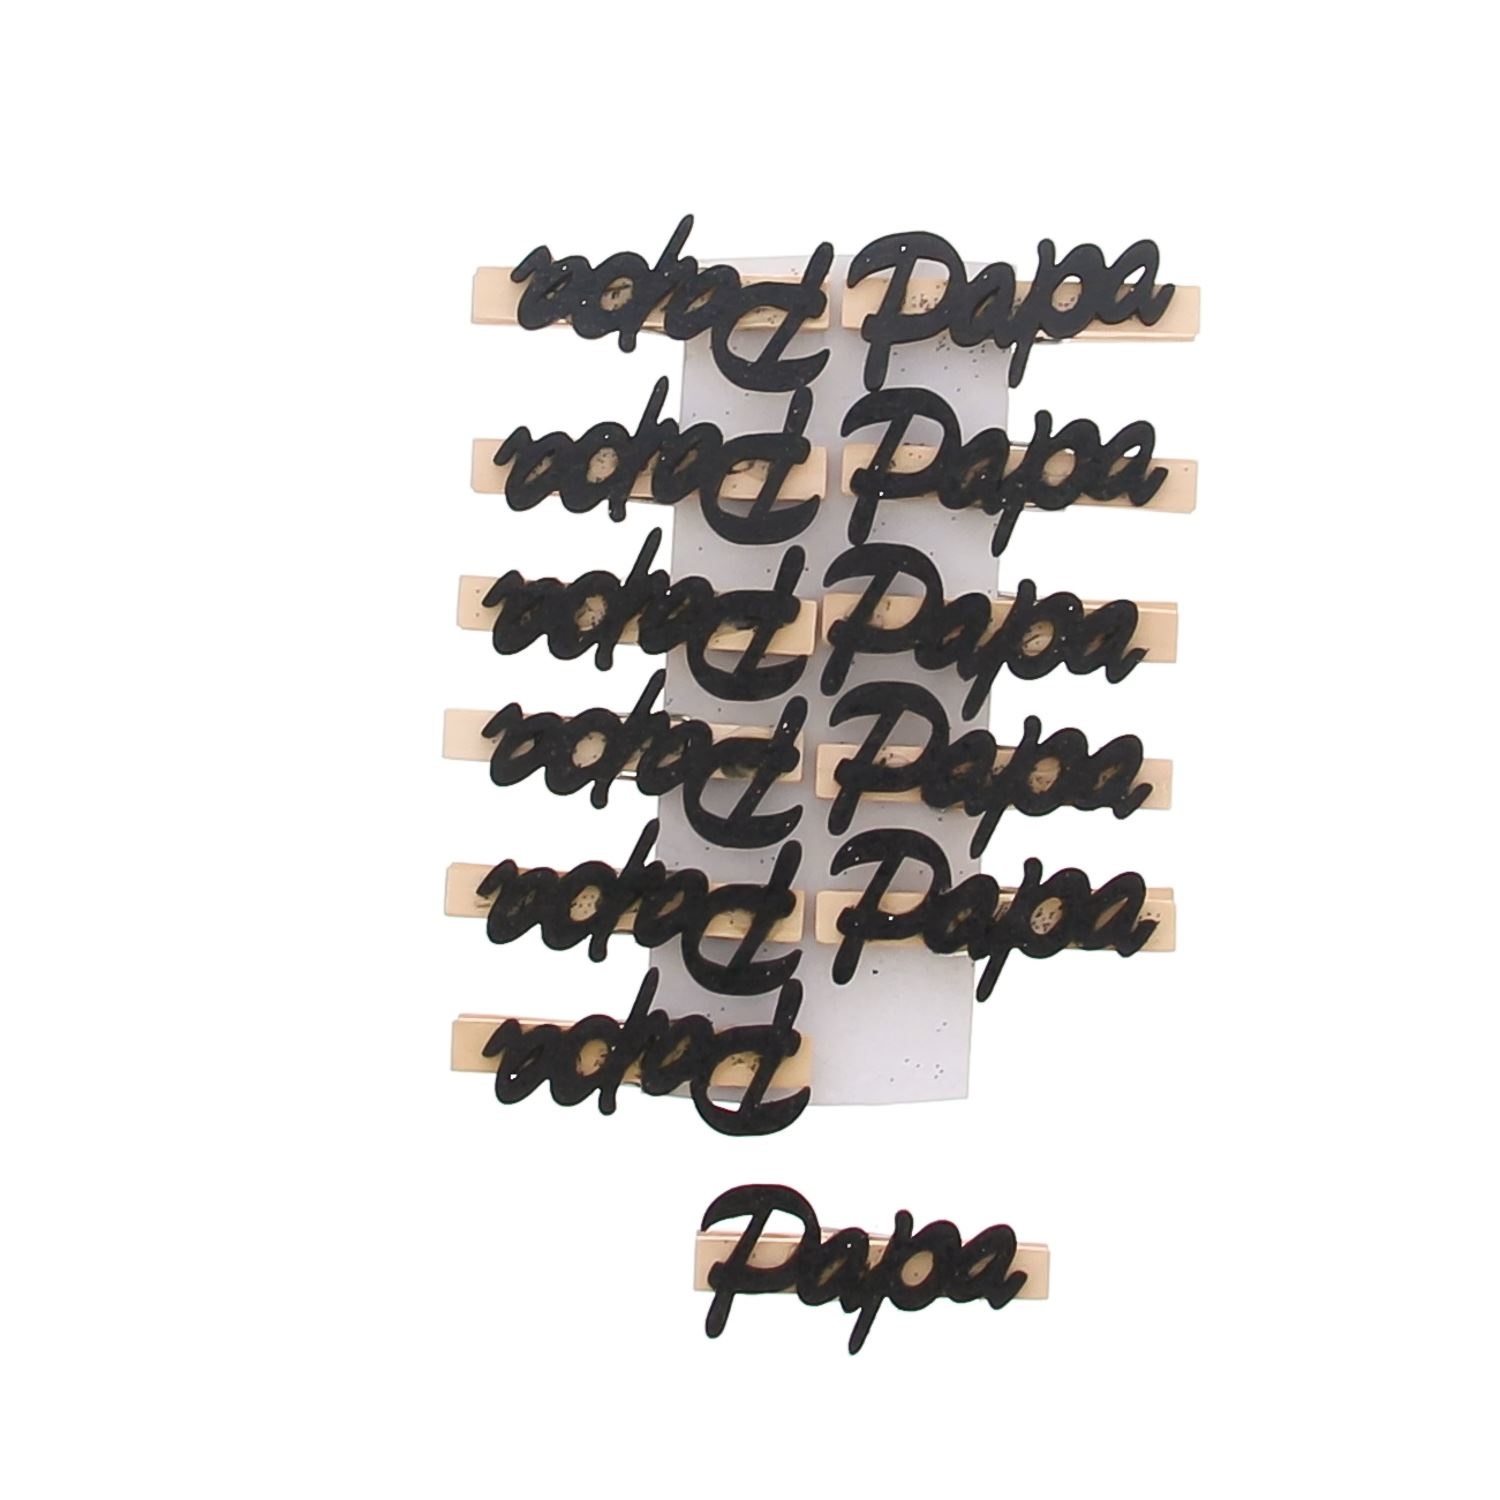 Tekst "Papa" op knijper zwart - 72 stuks